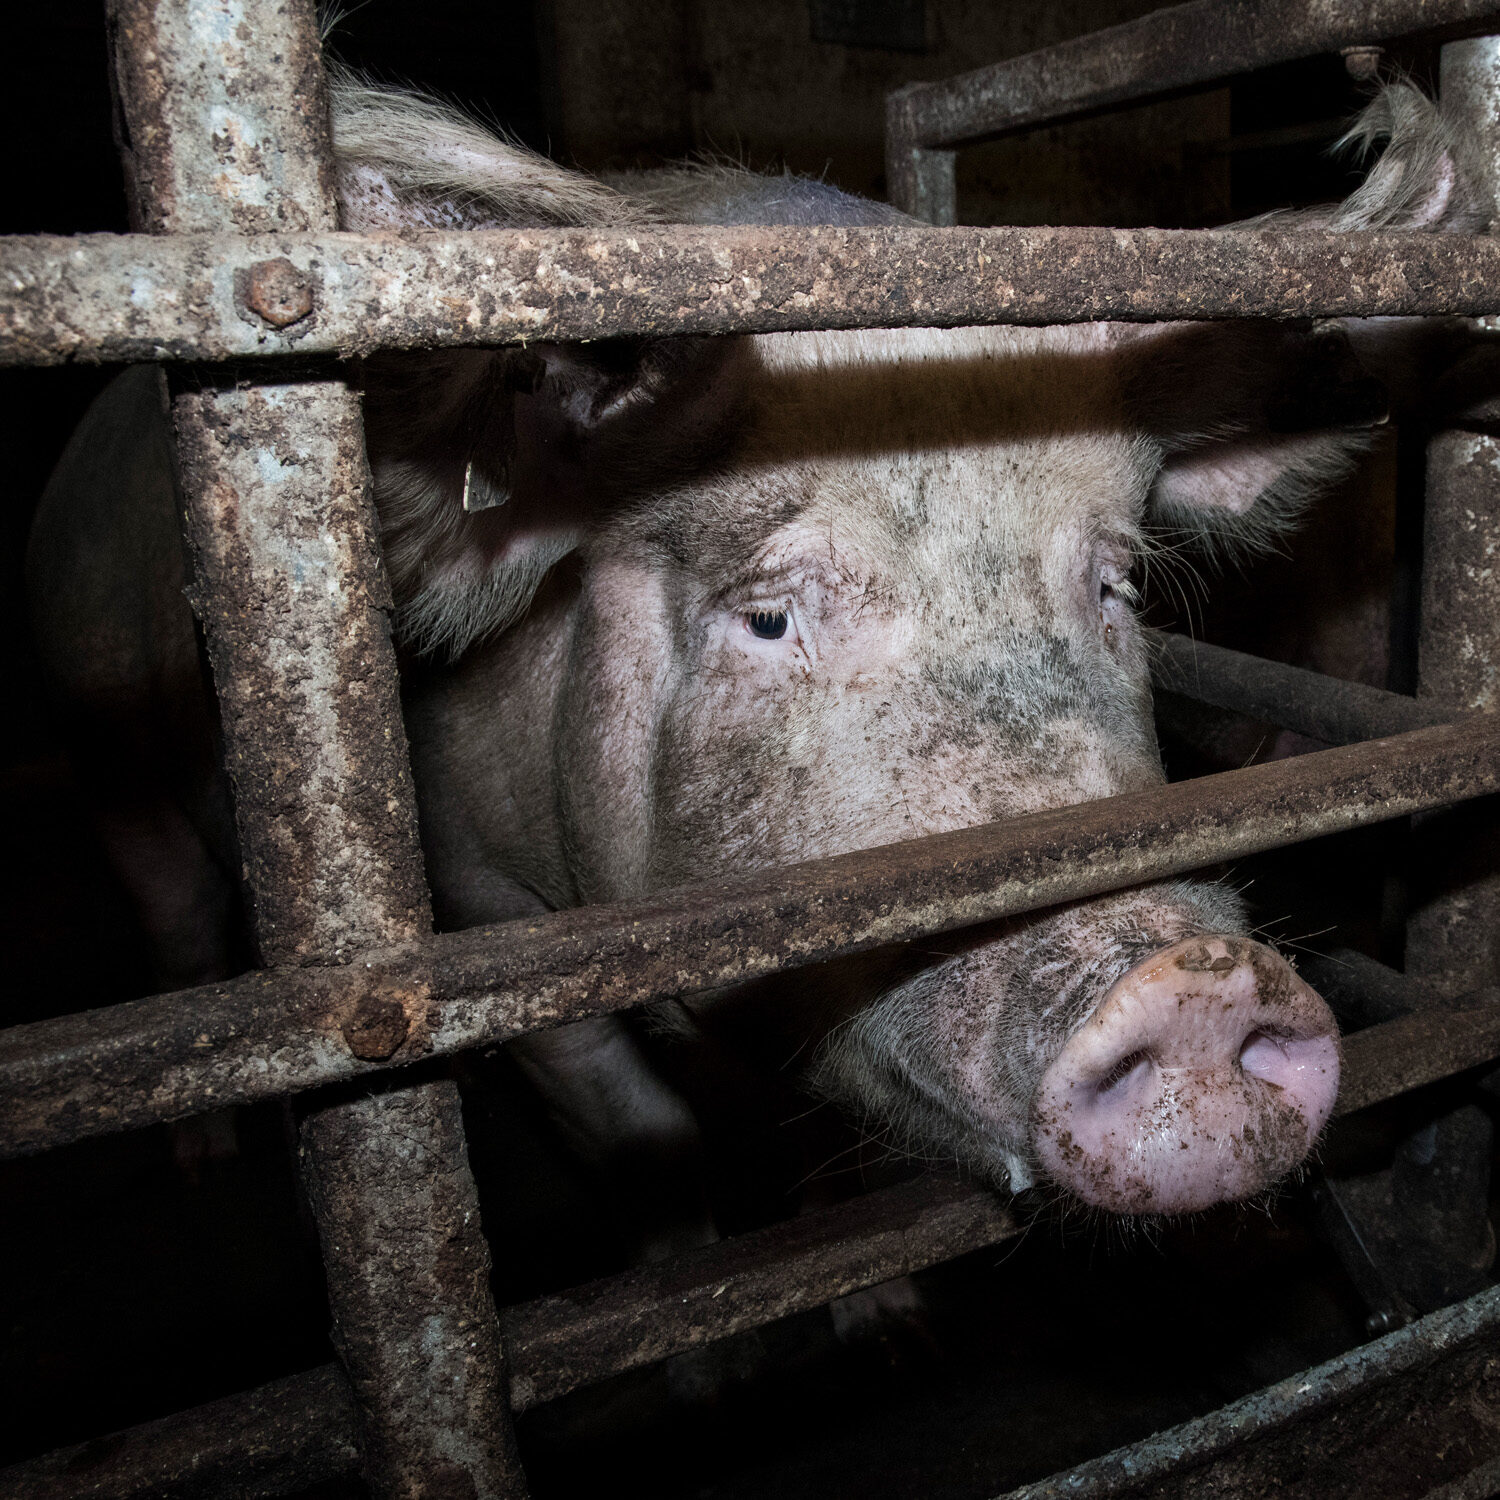 Schwein in industrieller Tierhaltung